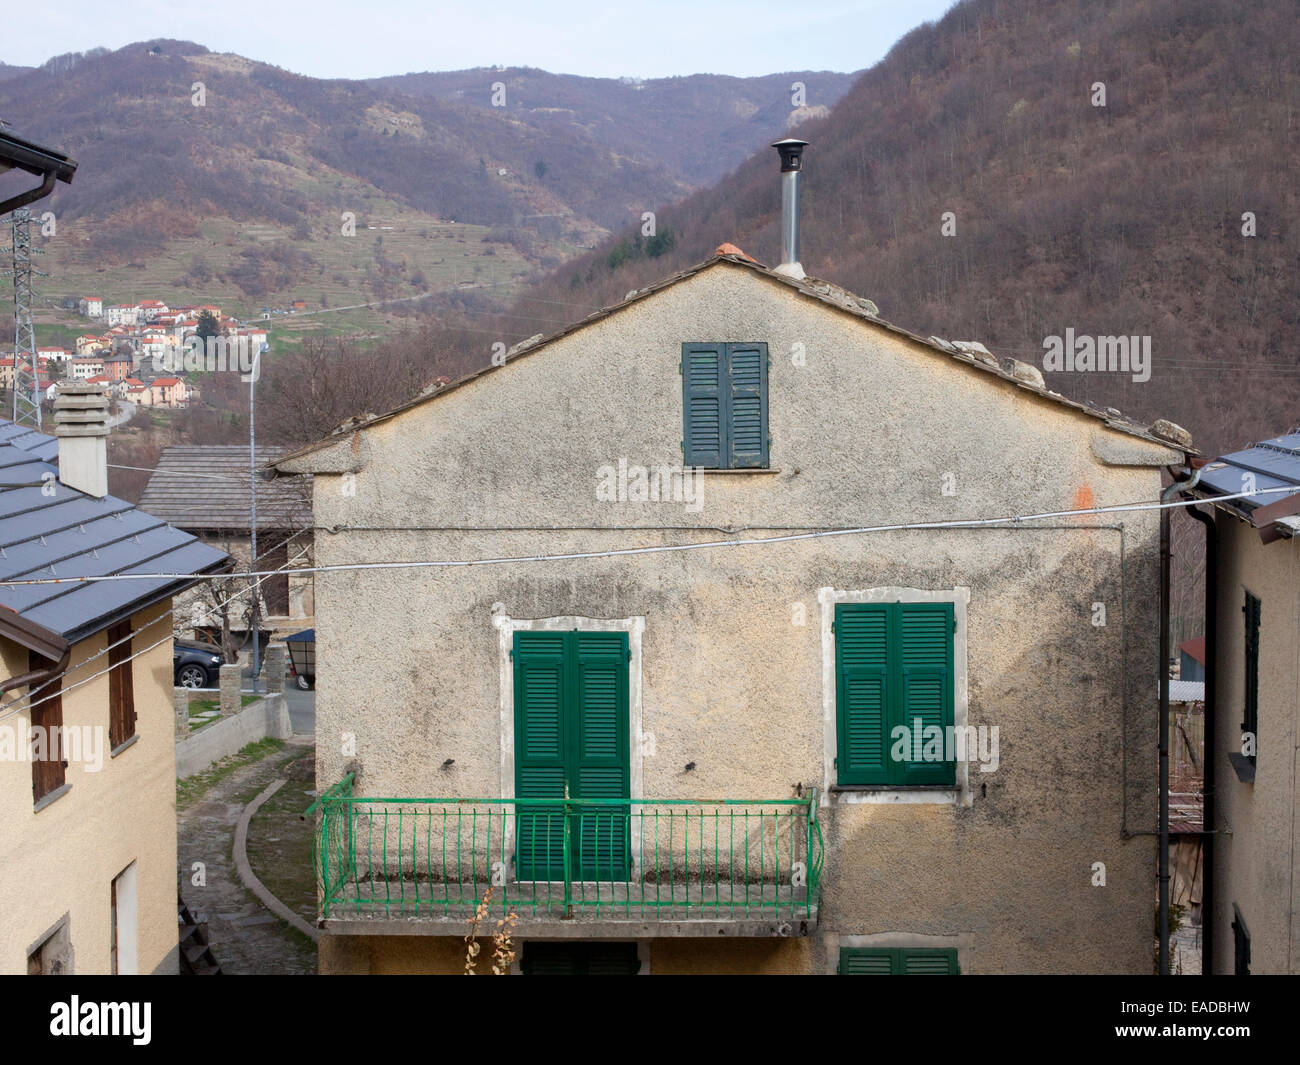 Maison avec des volets verts dans les petits village de montagne italien Banque D'Images